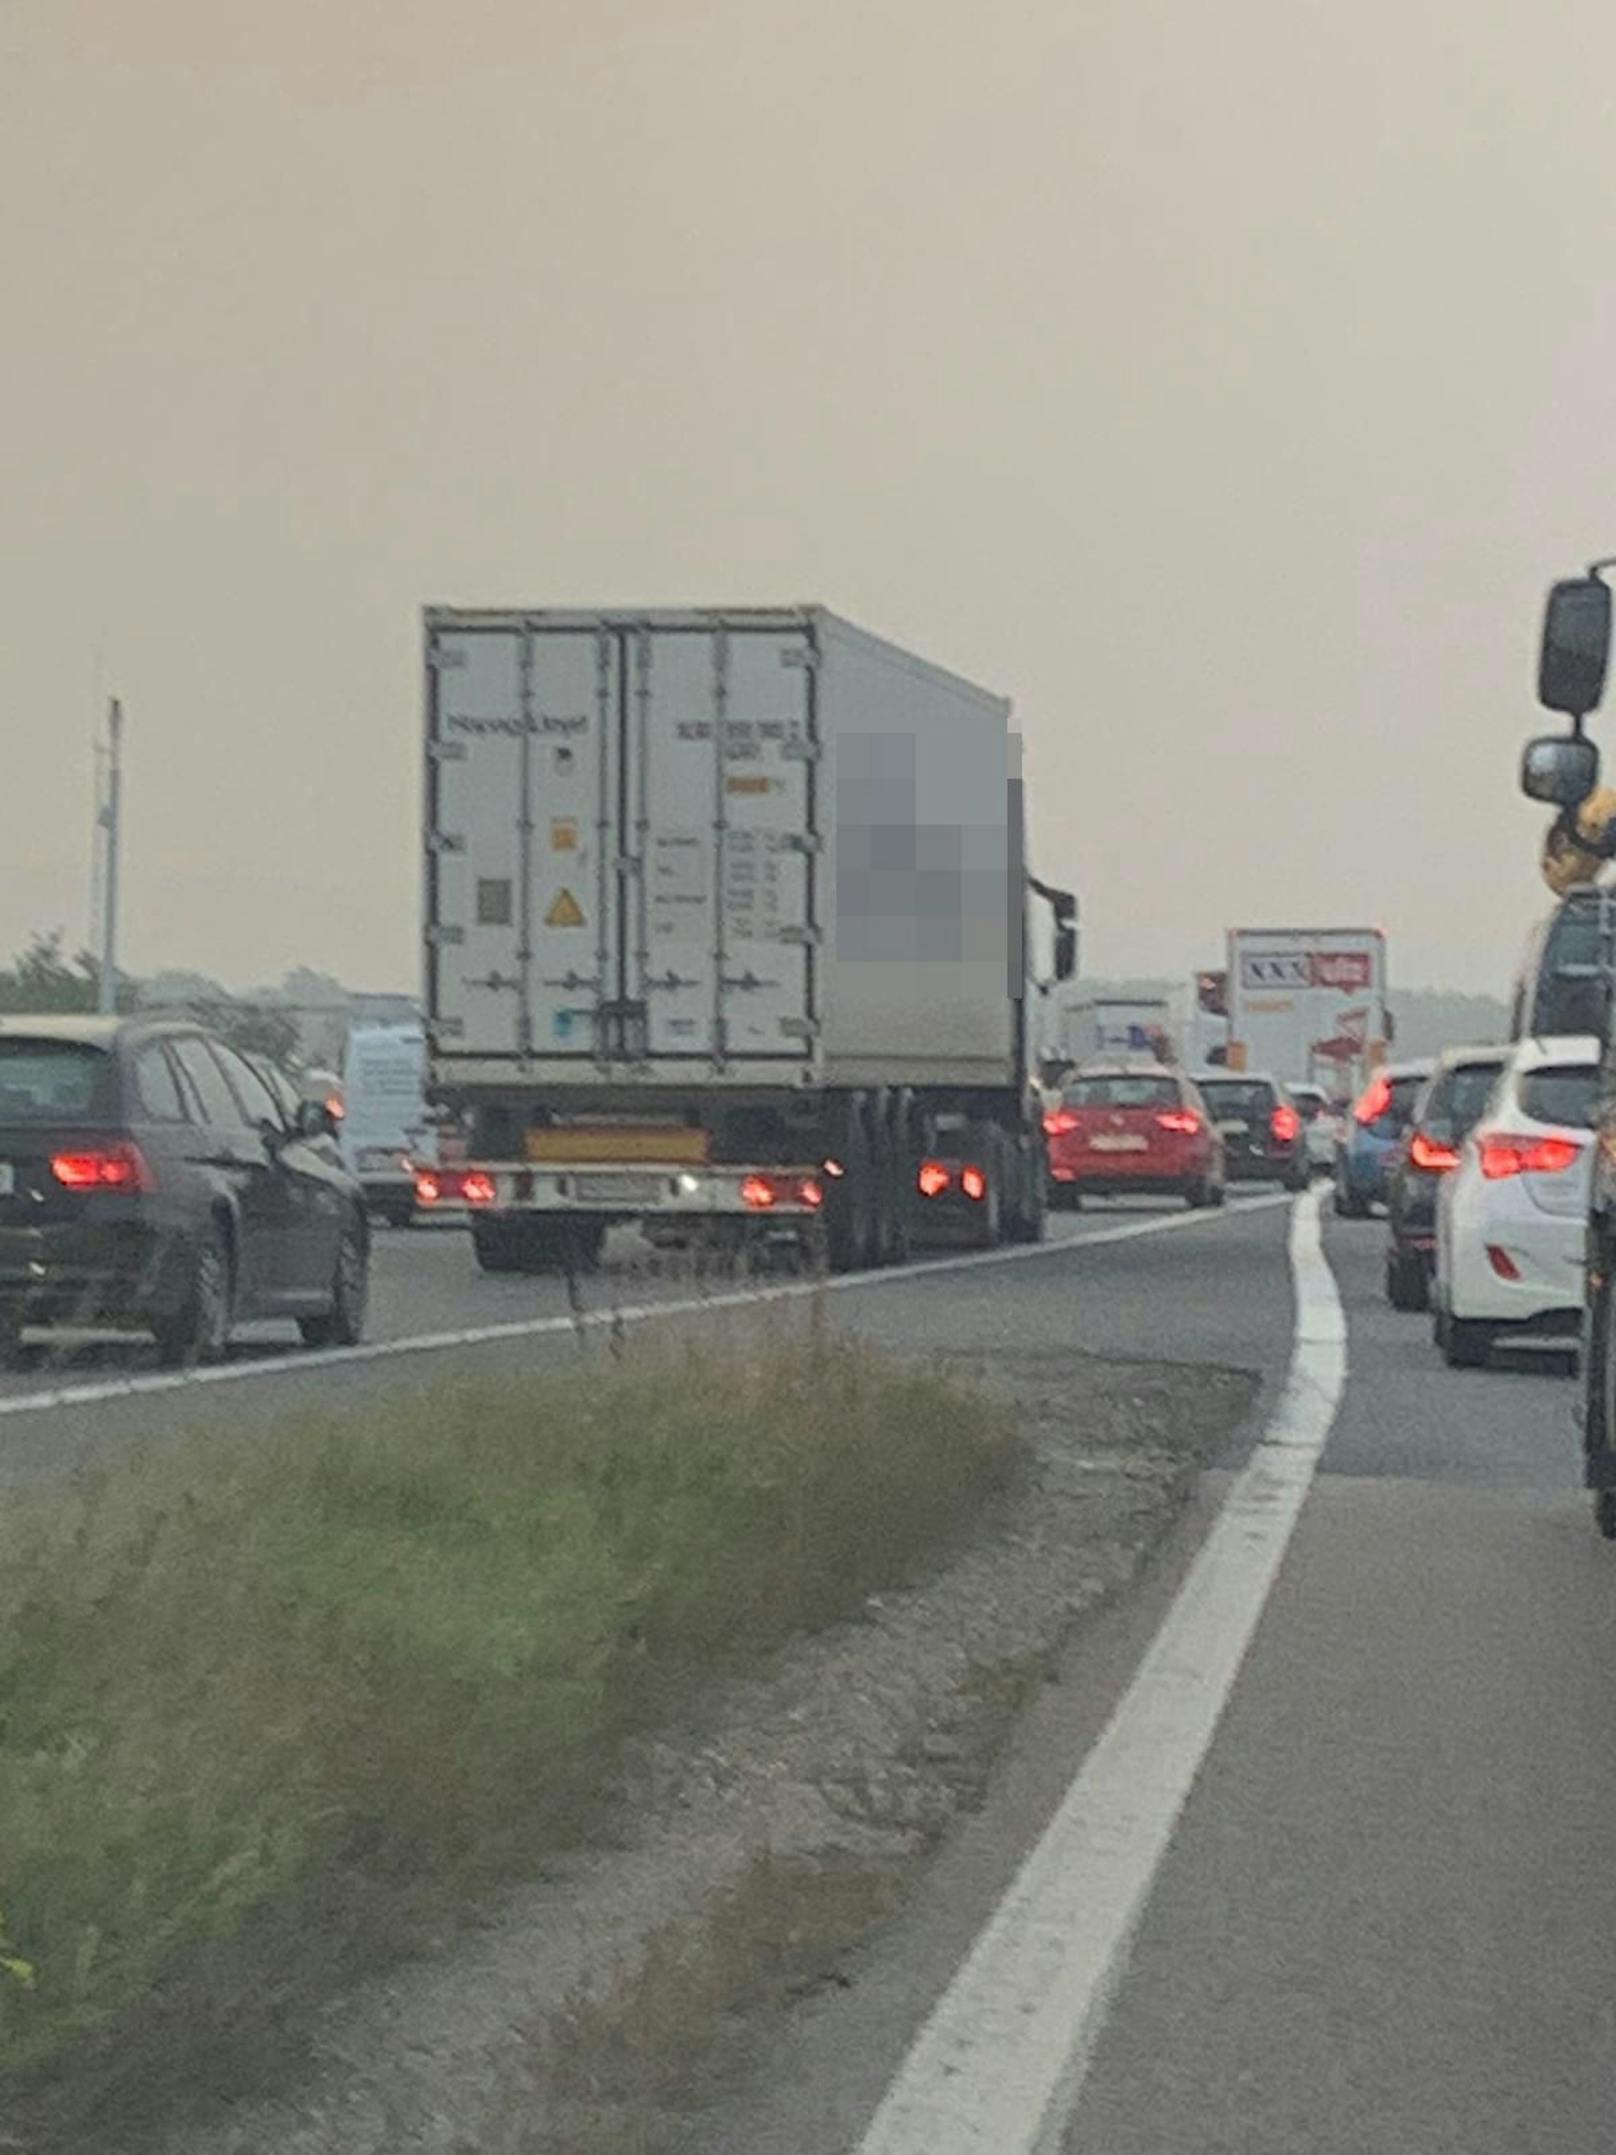 Autofahrer brauchen auf der A22 nach Wien aktuell viel Geduld! Nach einem Unfall hat sich ein riesiger Stau gebildet.